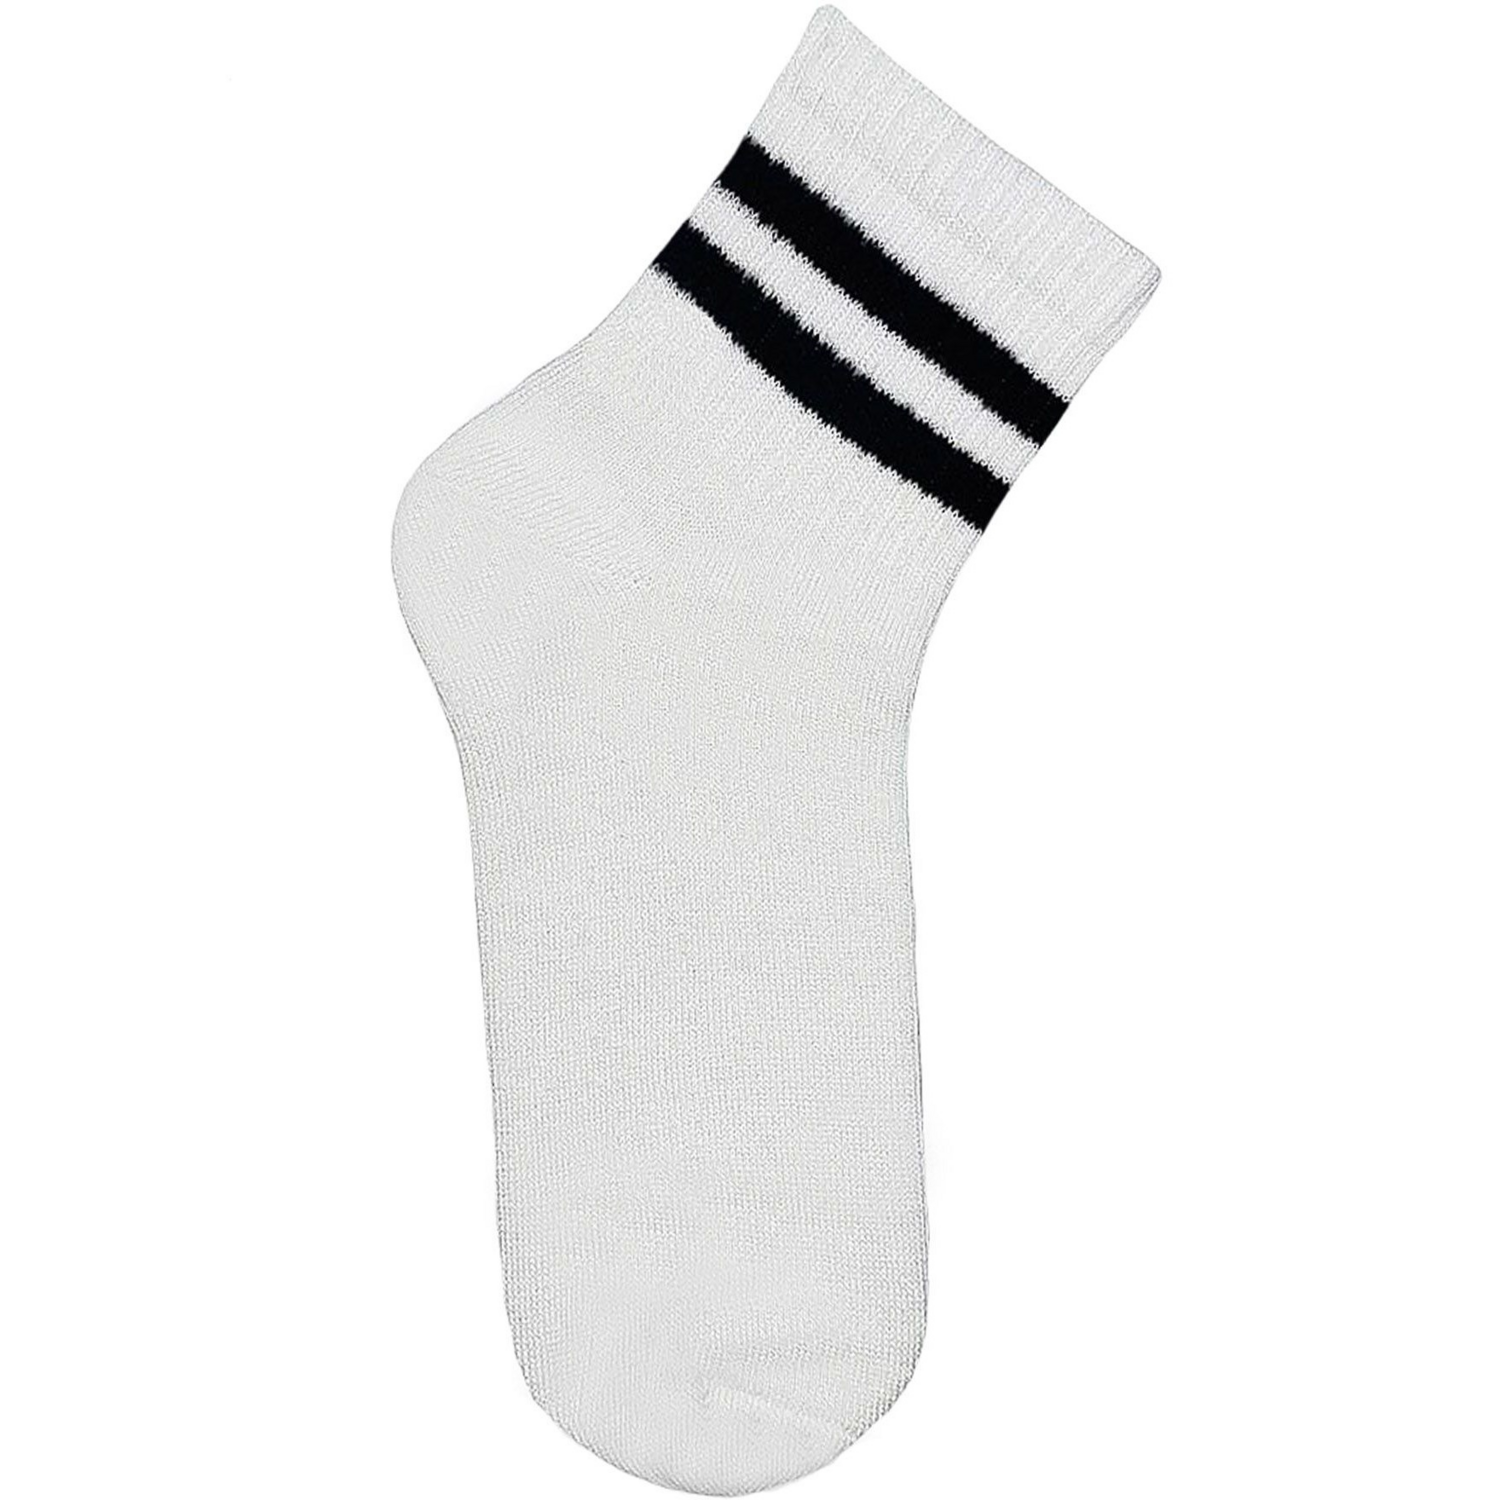 Носки детские Premier Socks 18-20 1 пара белые с черными полосками (4820163320076) фото 